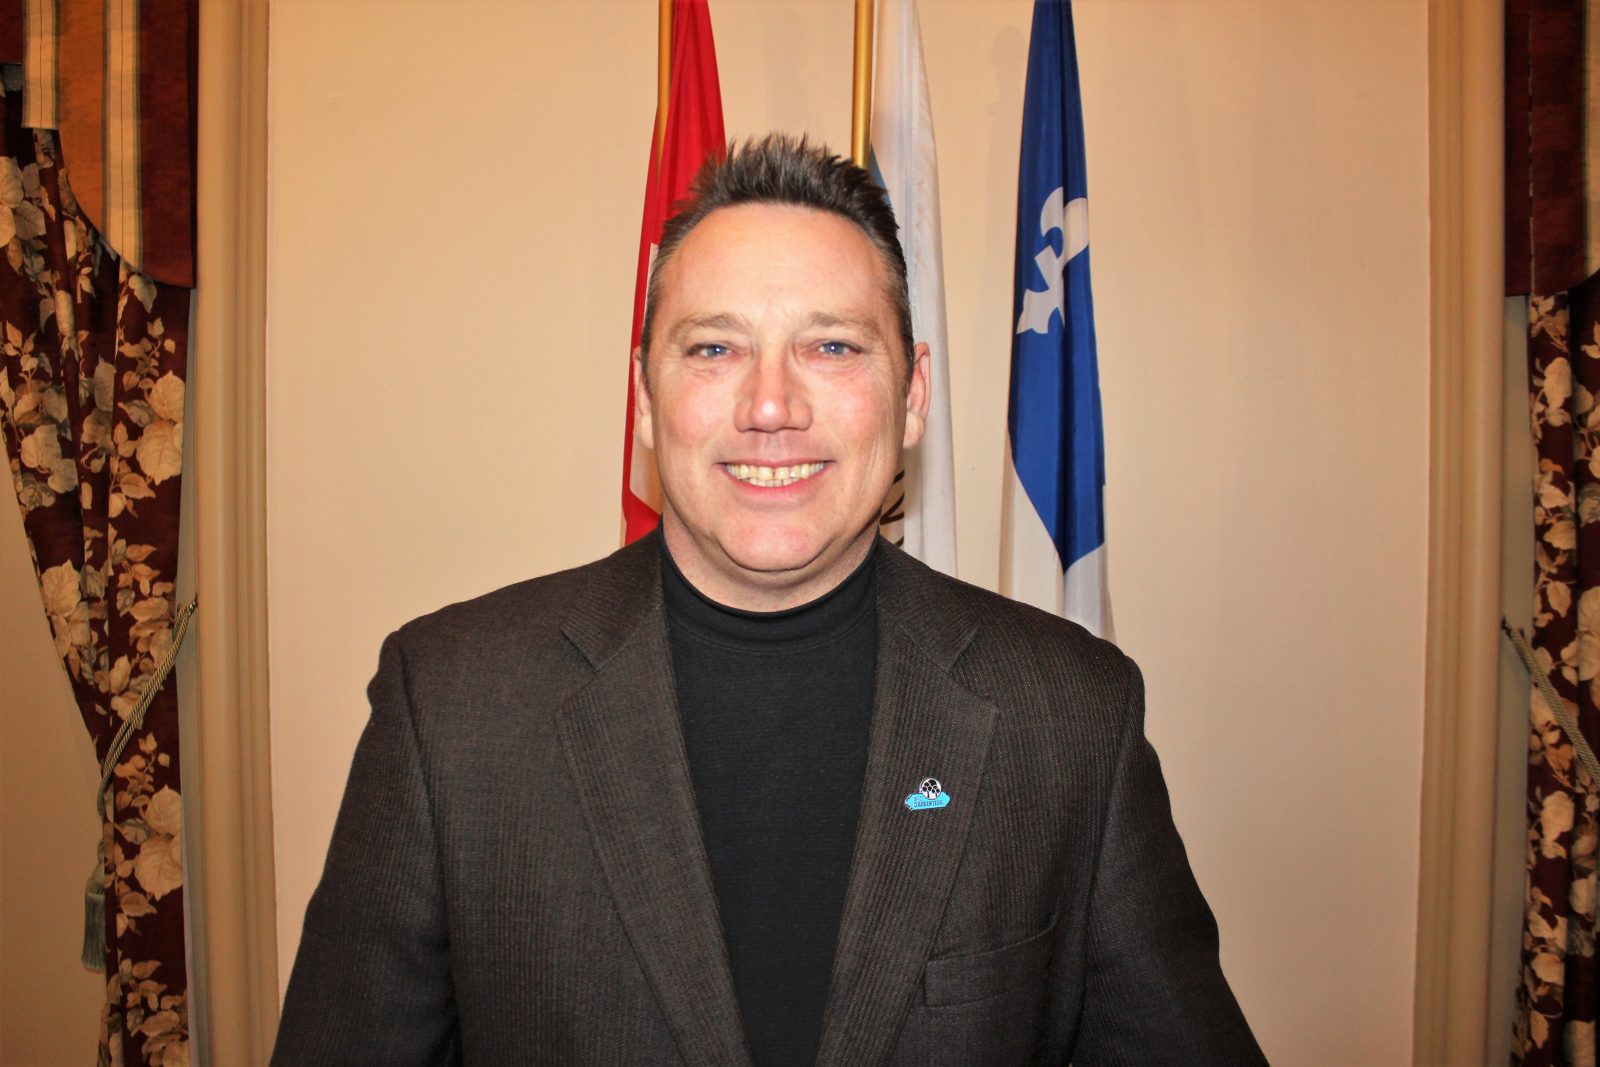 Le maire du canton de Gore élu 2e vice-président de la Fédération canadienne des municipalités